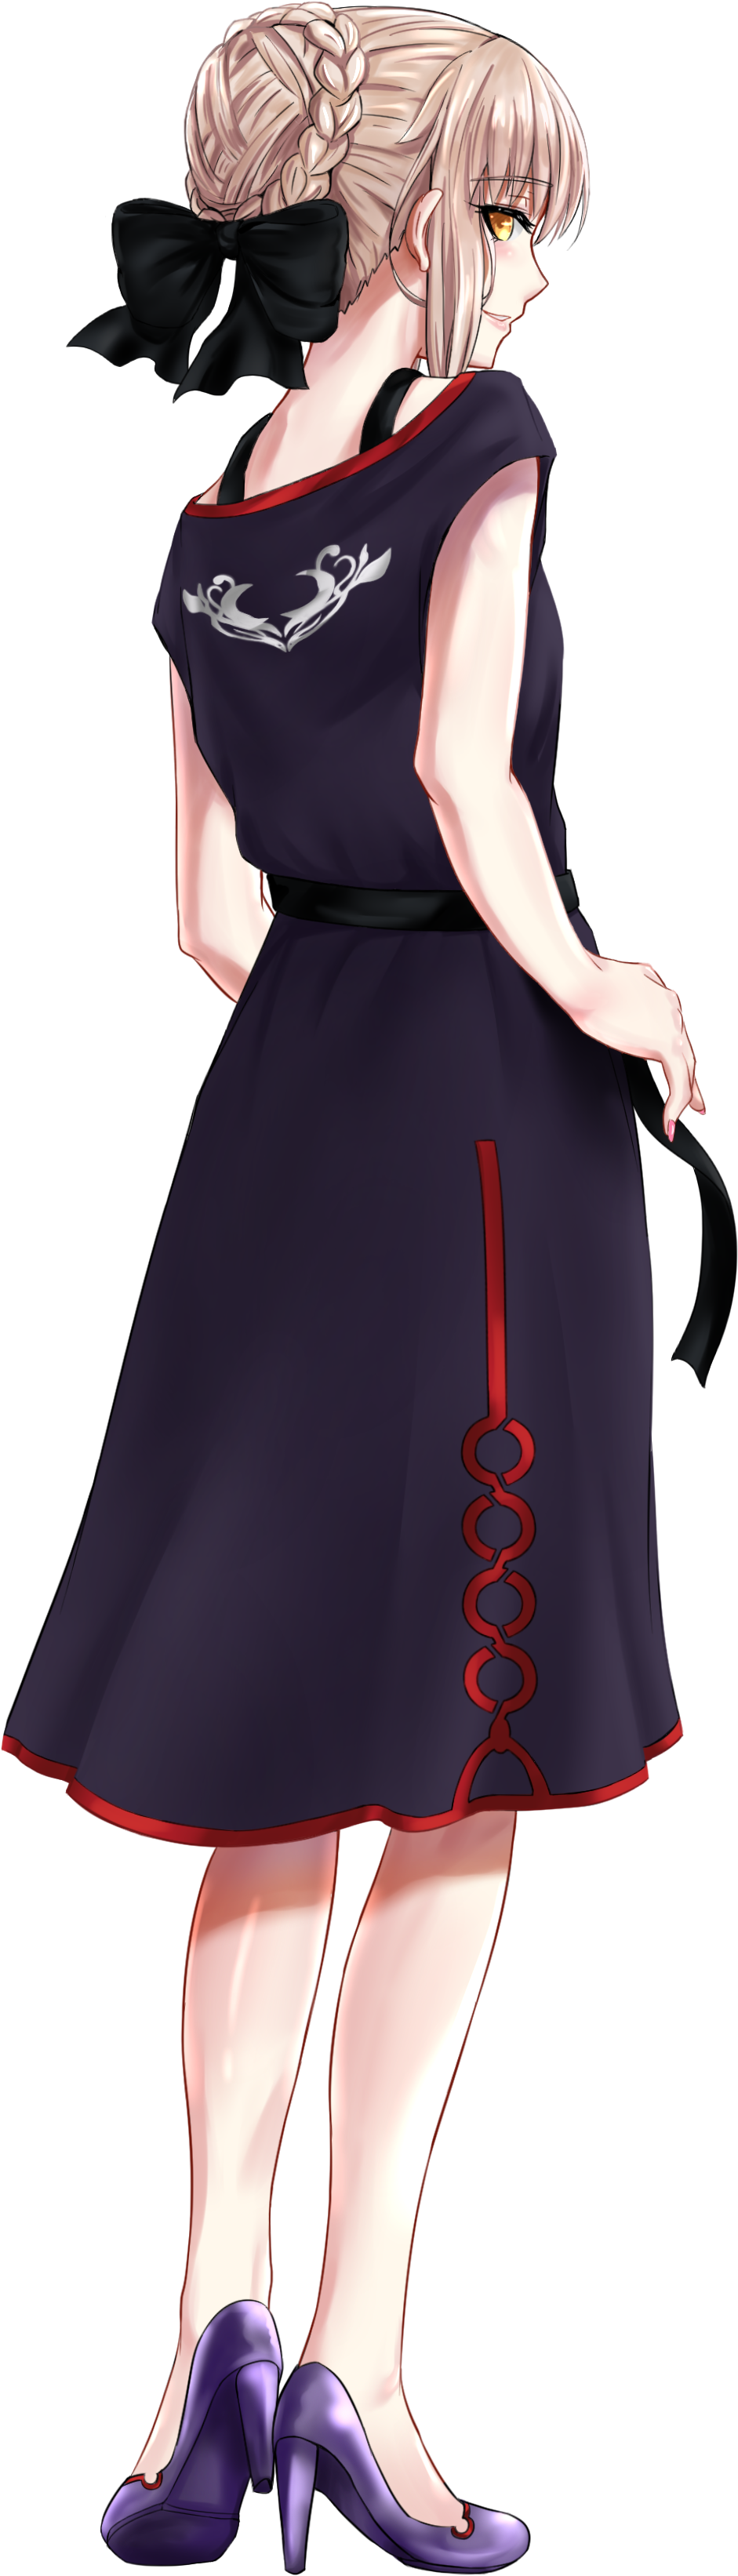 Elegant Anime Girlin Navy Dress